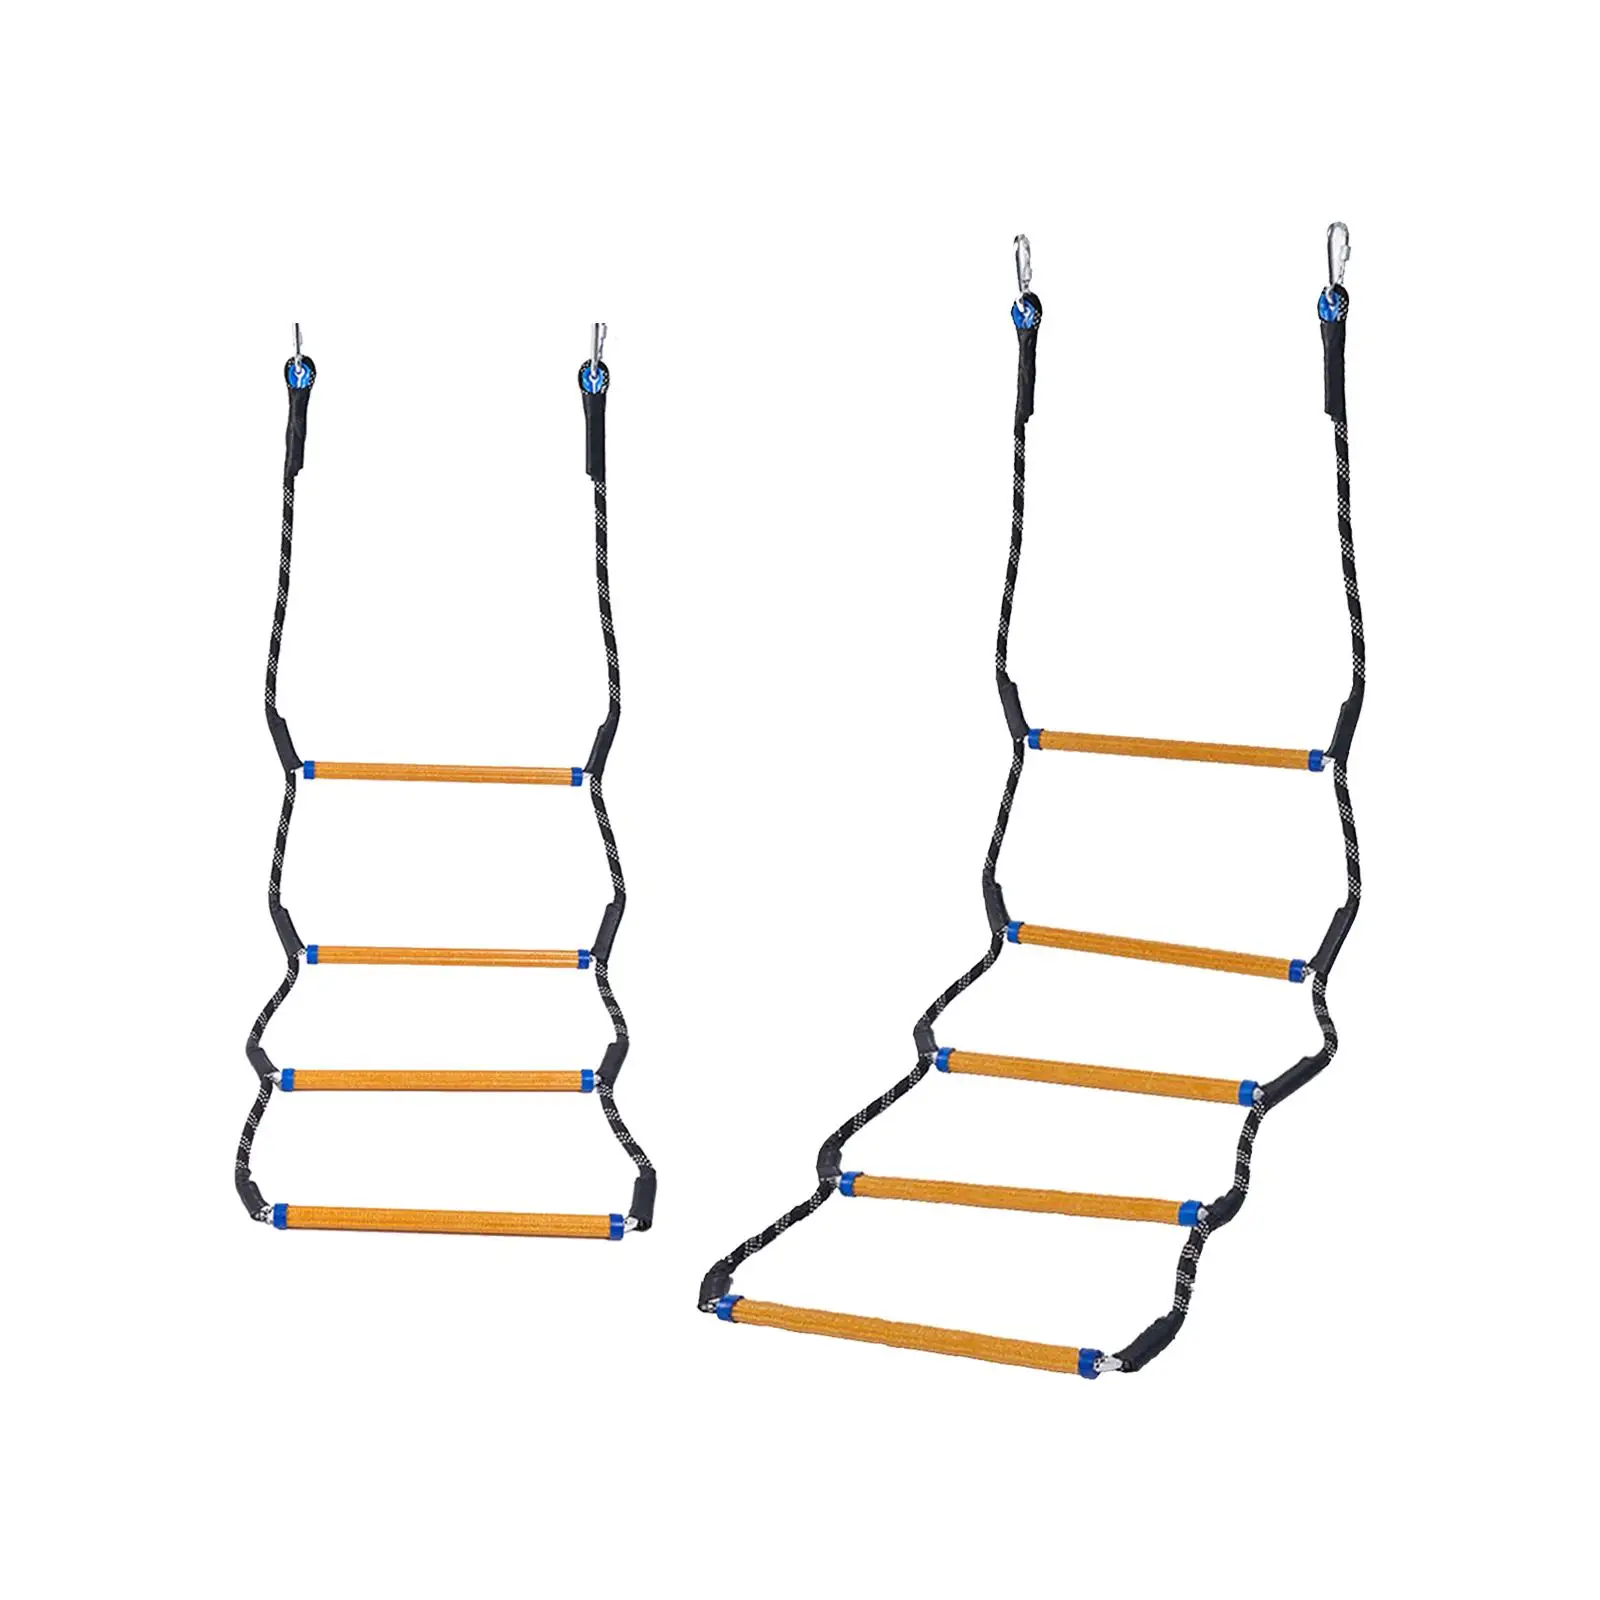 Веревочная лестница для помощи при посадке на лодку Веревочная лестница Подвесная морская веревочная лестница для надувной лодки Понтона скоростного катера вейкбординга каякинга Изображение 1